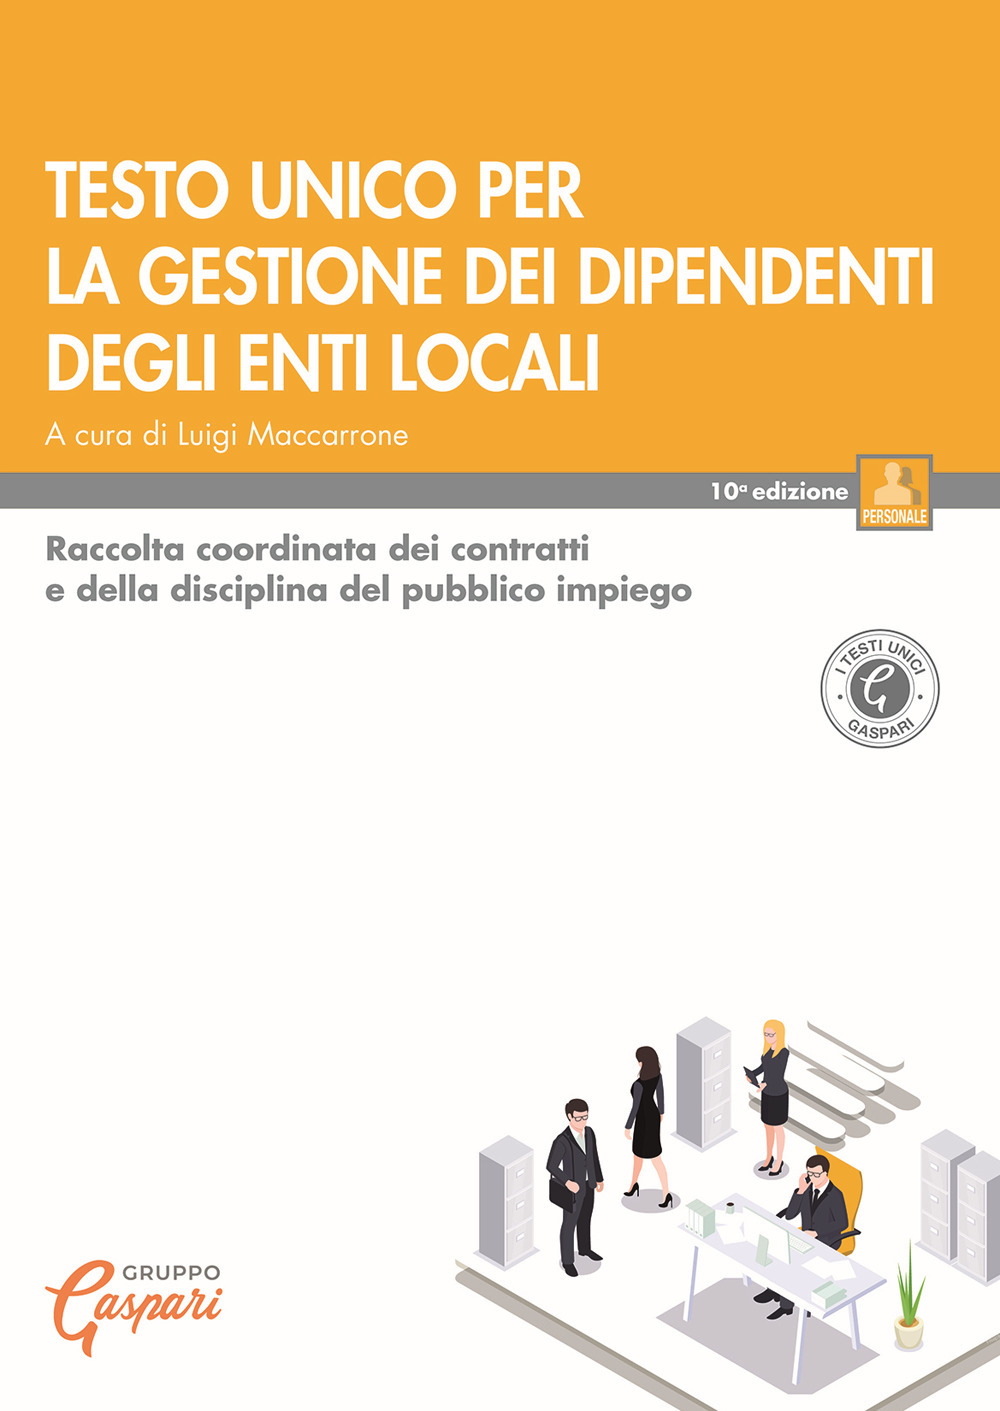 Testo unico per la gestione dei dipendenti degli enti locali. Raccolta coordinata dei contratti e della disciplina del pubblico impiego